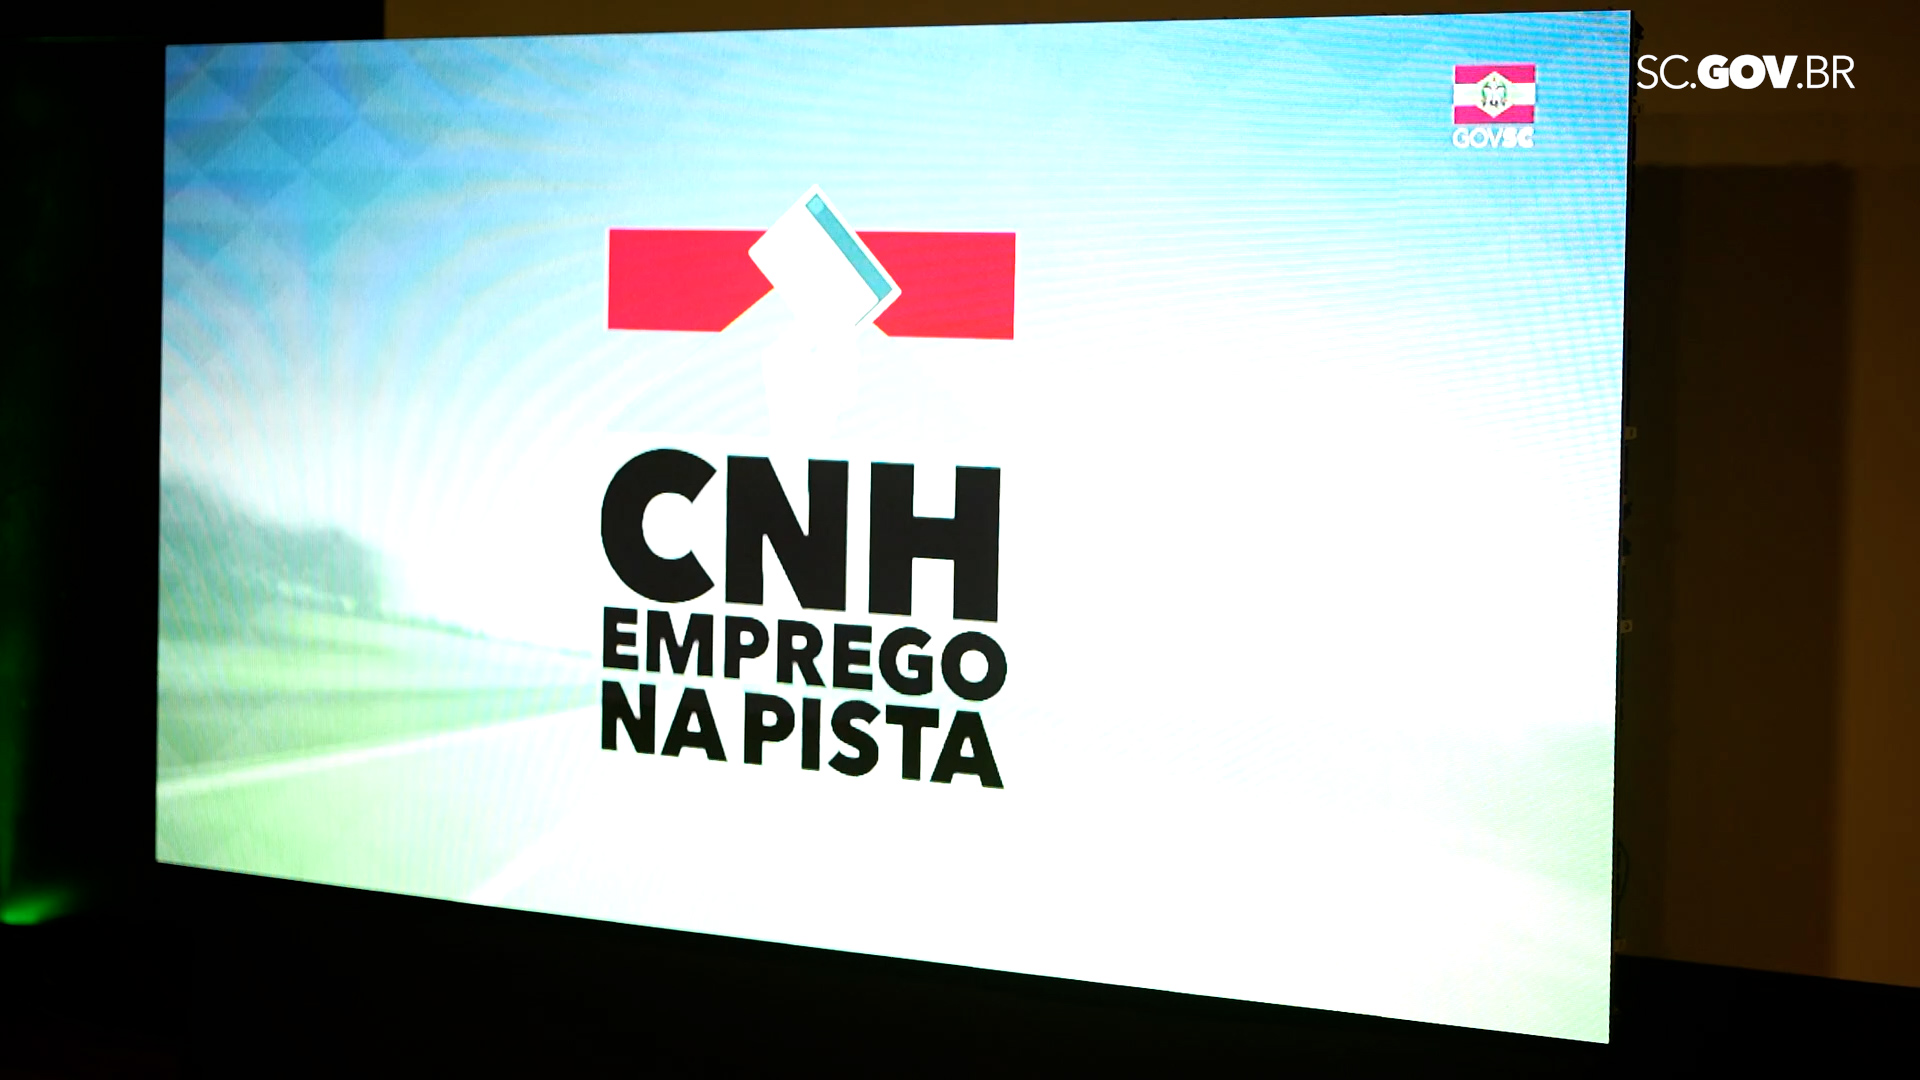 Governo de SC lança Programa CNH Emprego na Pista com parcerias públicas e privadas